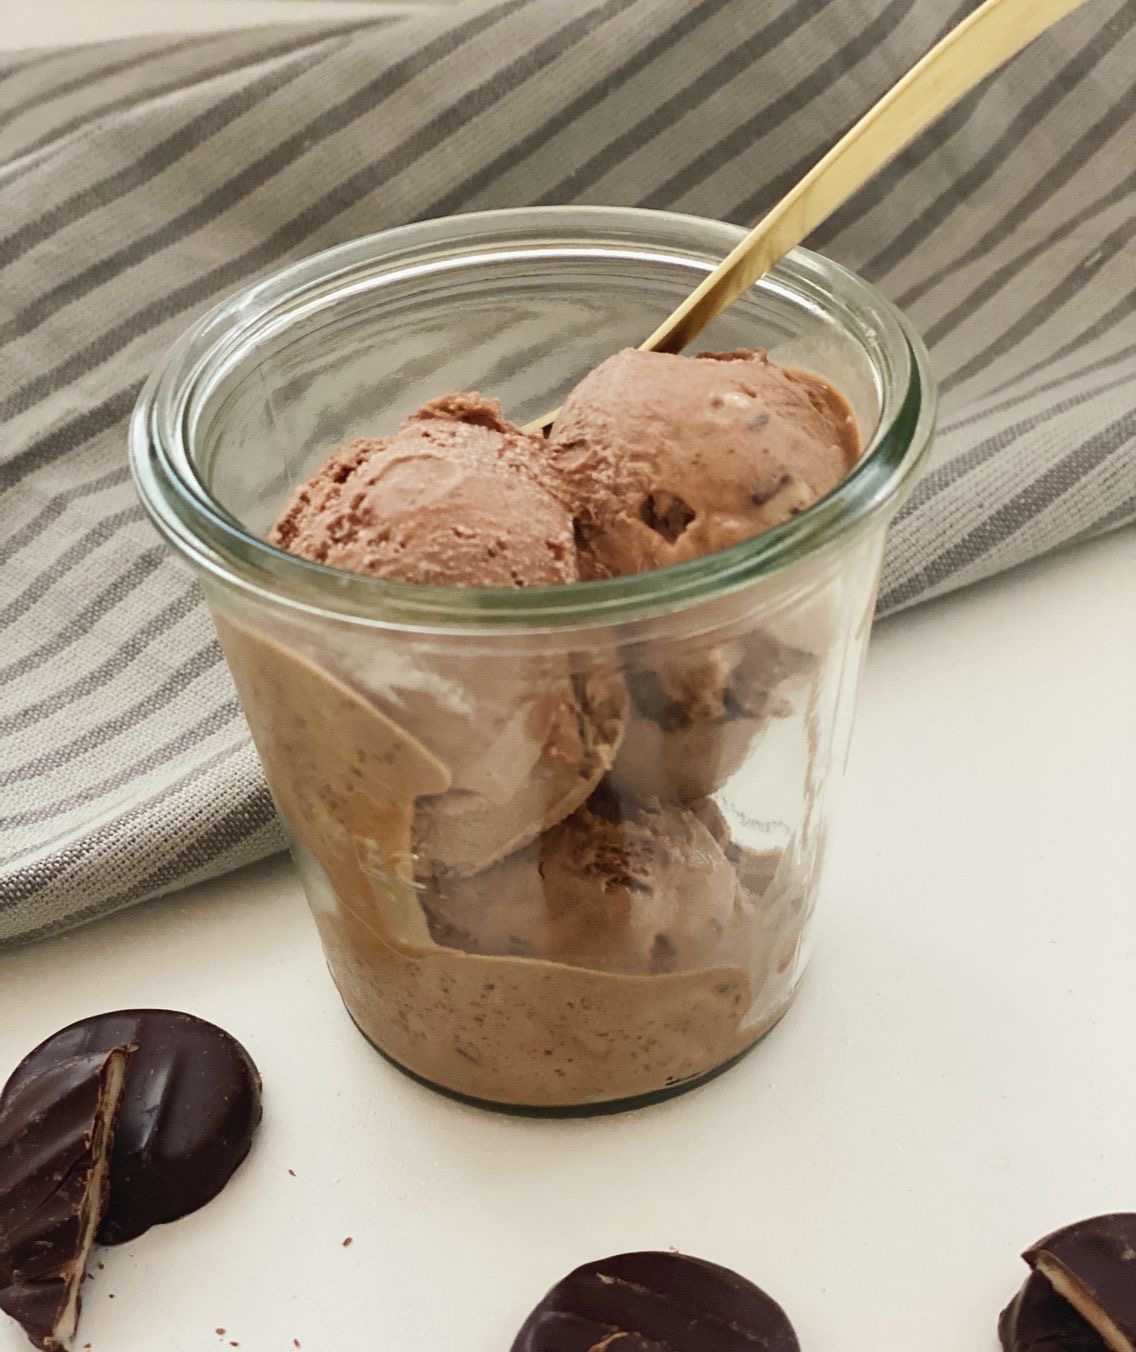 Mint chokoladeis i en høj glasskål med en guldske i. Der ligger mint chokoladeknapper ved siden af glasset med is i. Det er de samme mint chokoladeknapper som der er i isen.